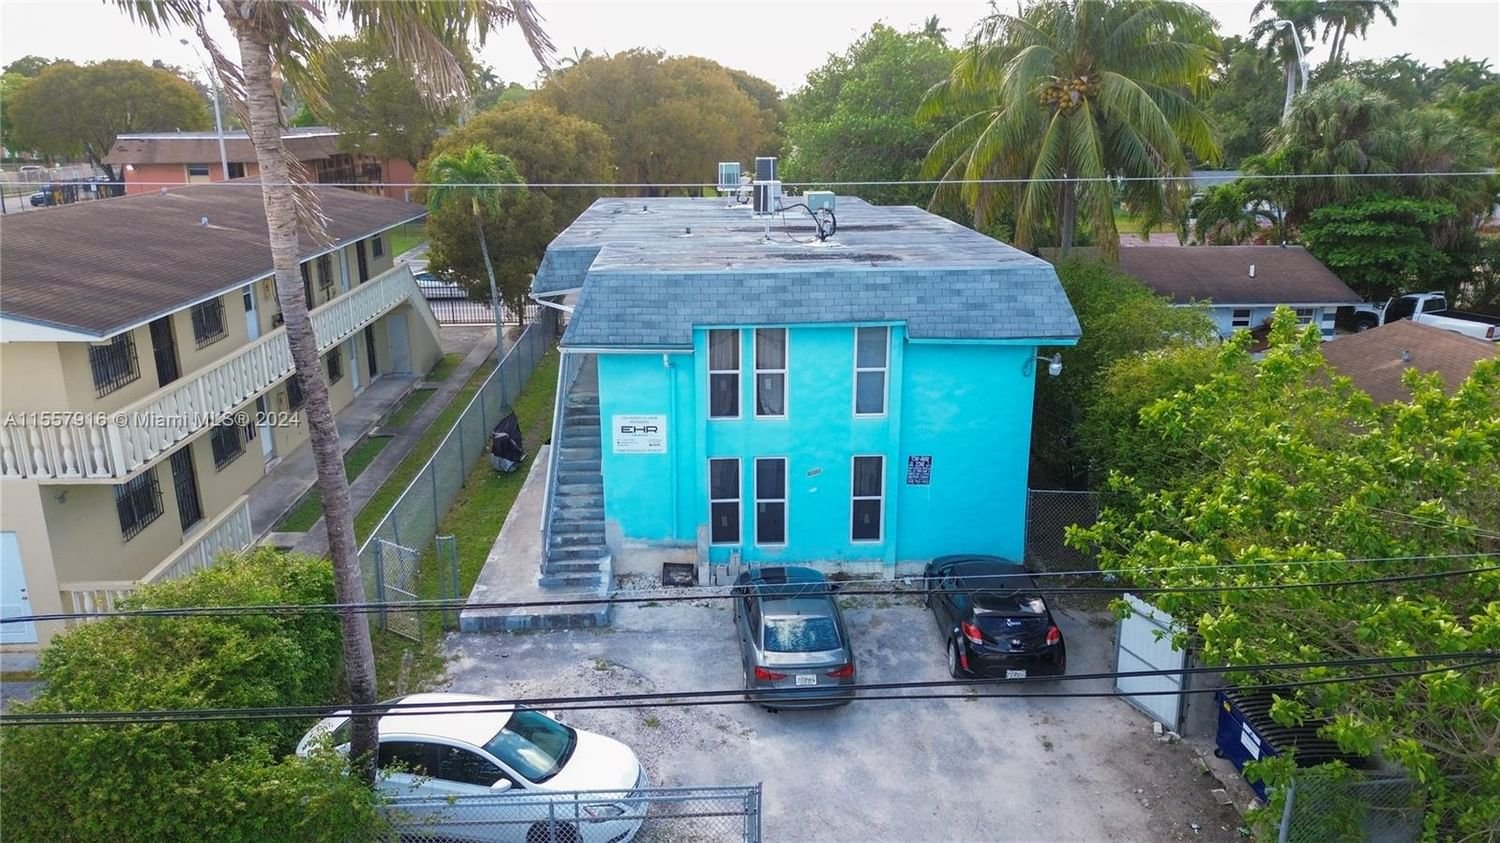 Real estate property located at 8312 Miami Ct, Miami-Dade County, LITTLE RIVER GARDENS, Miami, FL